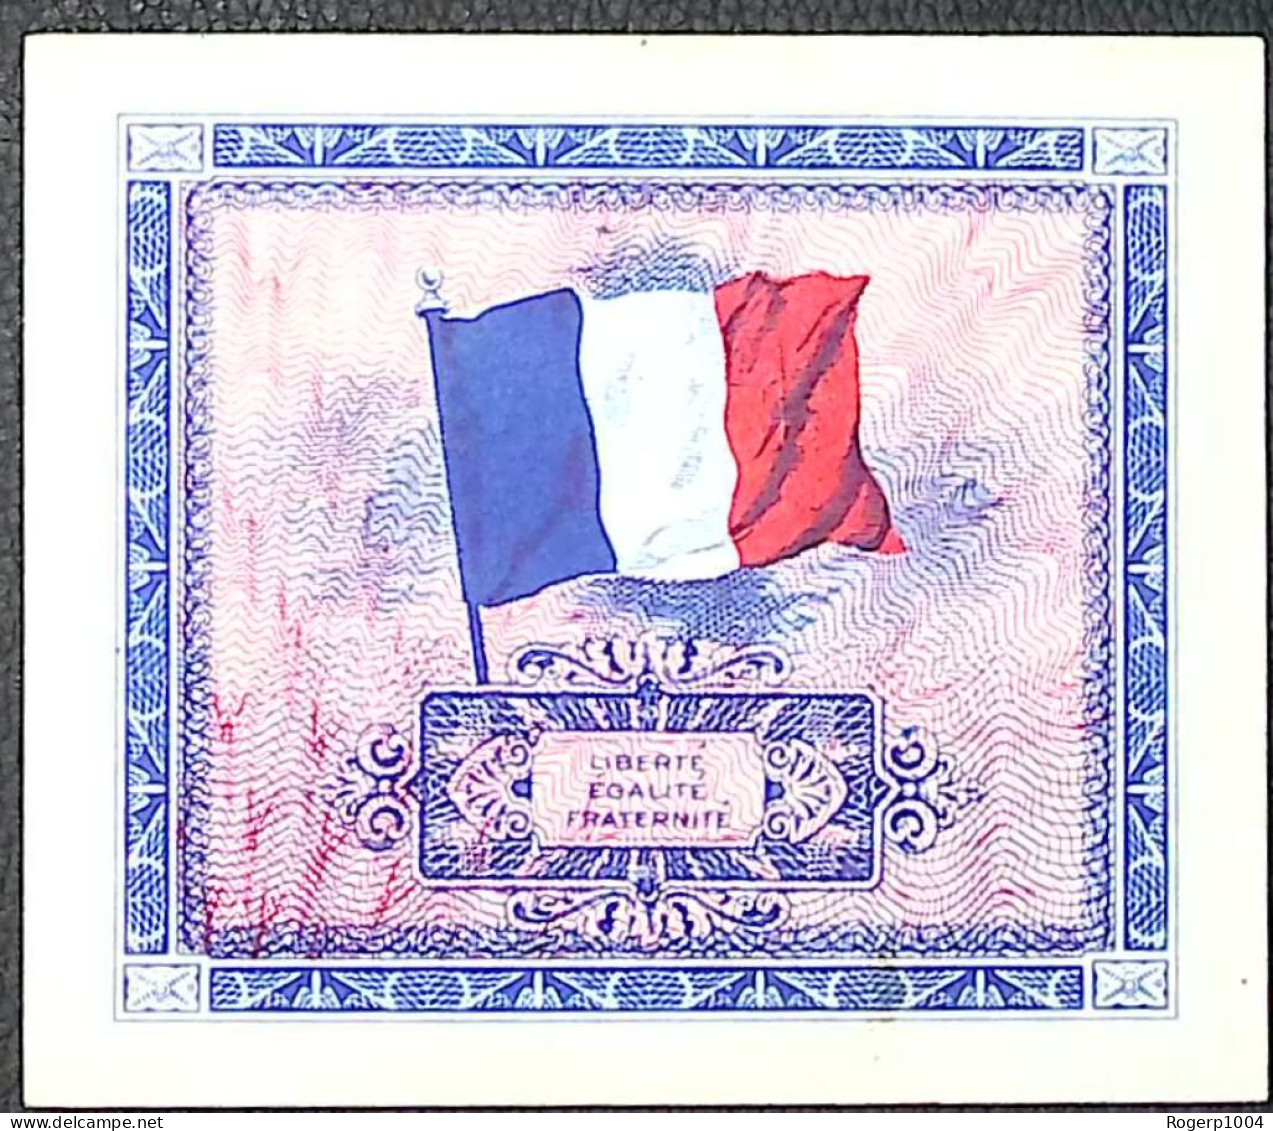 FRANCE * Billets Du Trésor * 5 Francs Drapeau * 1944 * Sans Série * Etat/Grade SUP+/XXF - 1944 Drapeau/France